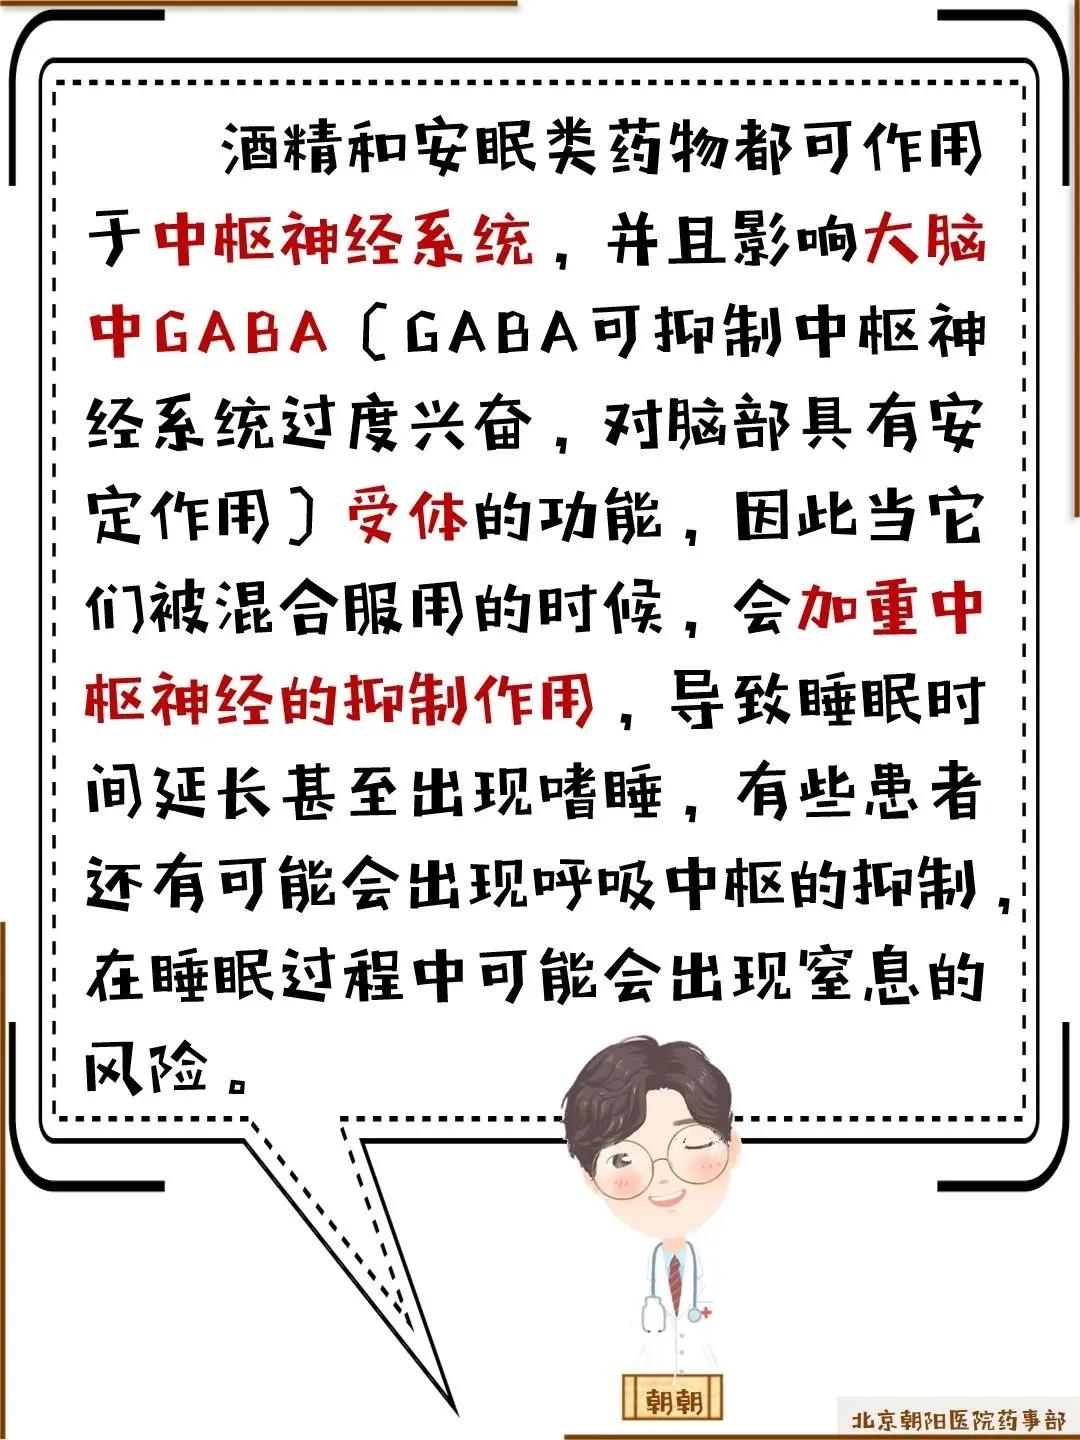 来源 | 新闻晨报、橙柿互动、北京朝阳医院药事部